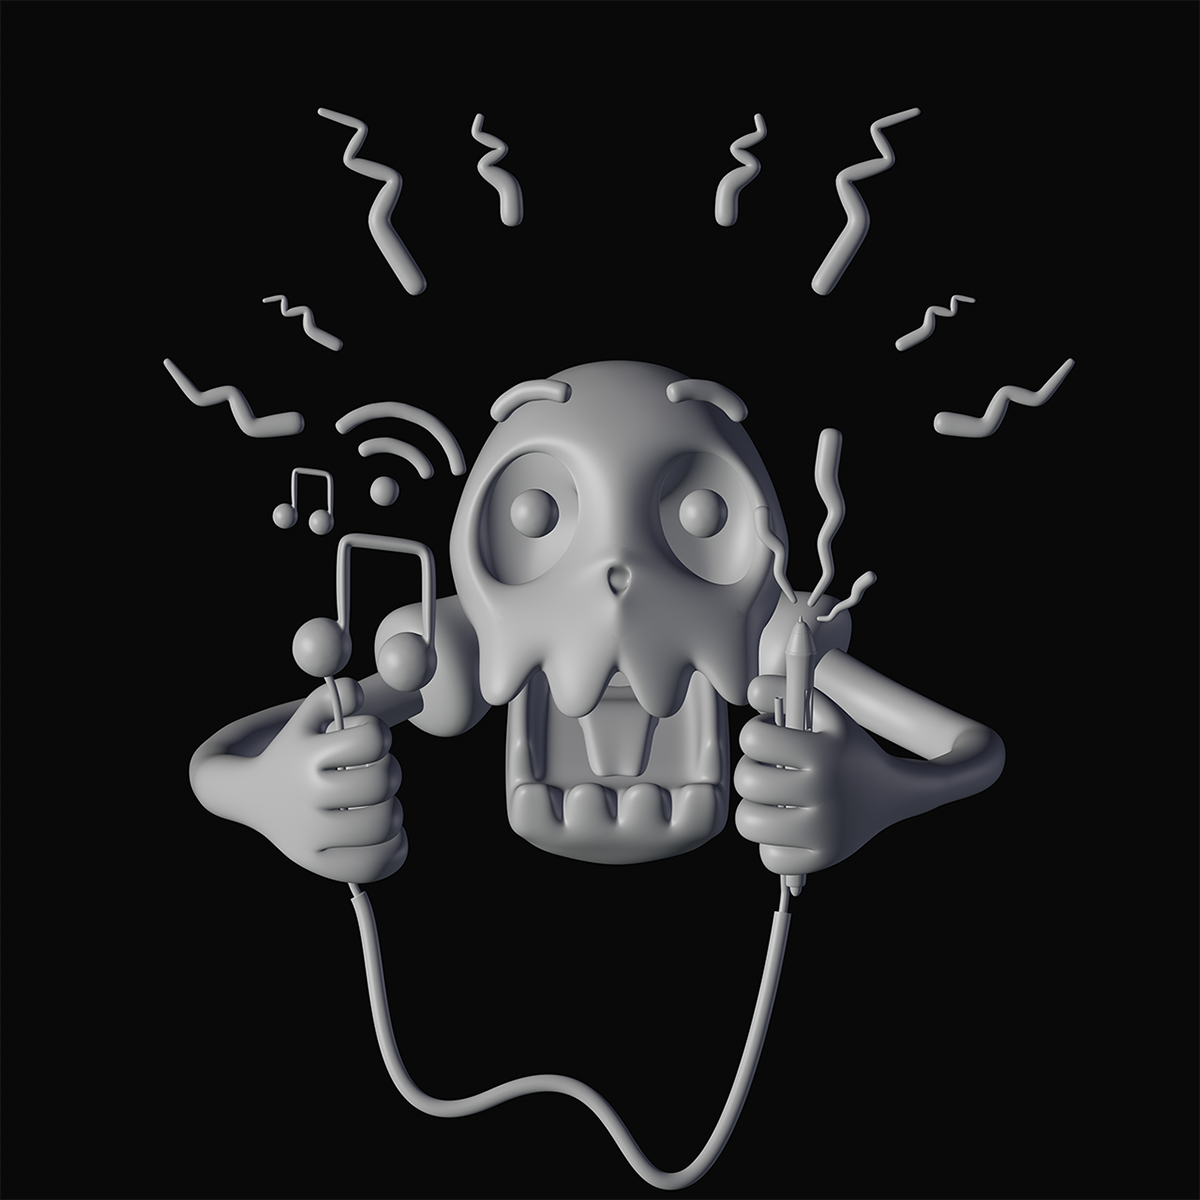 art music wifi skull 3D 3d art Character 3D Character design ILLUSTRATION 